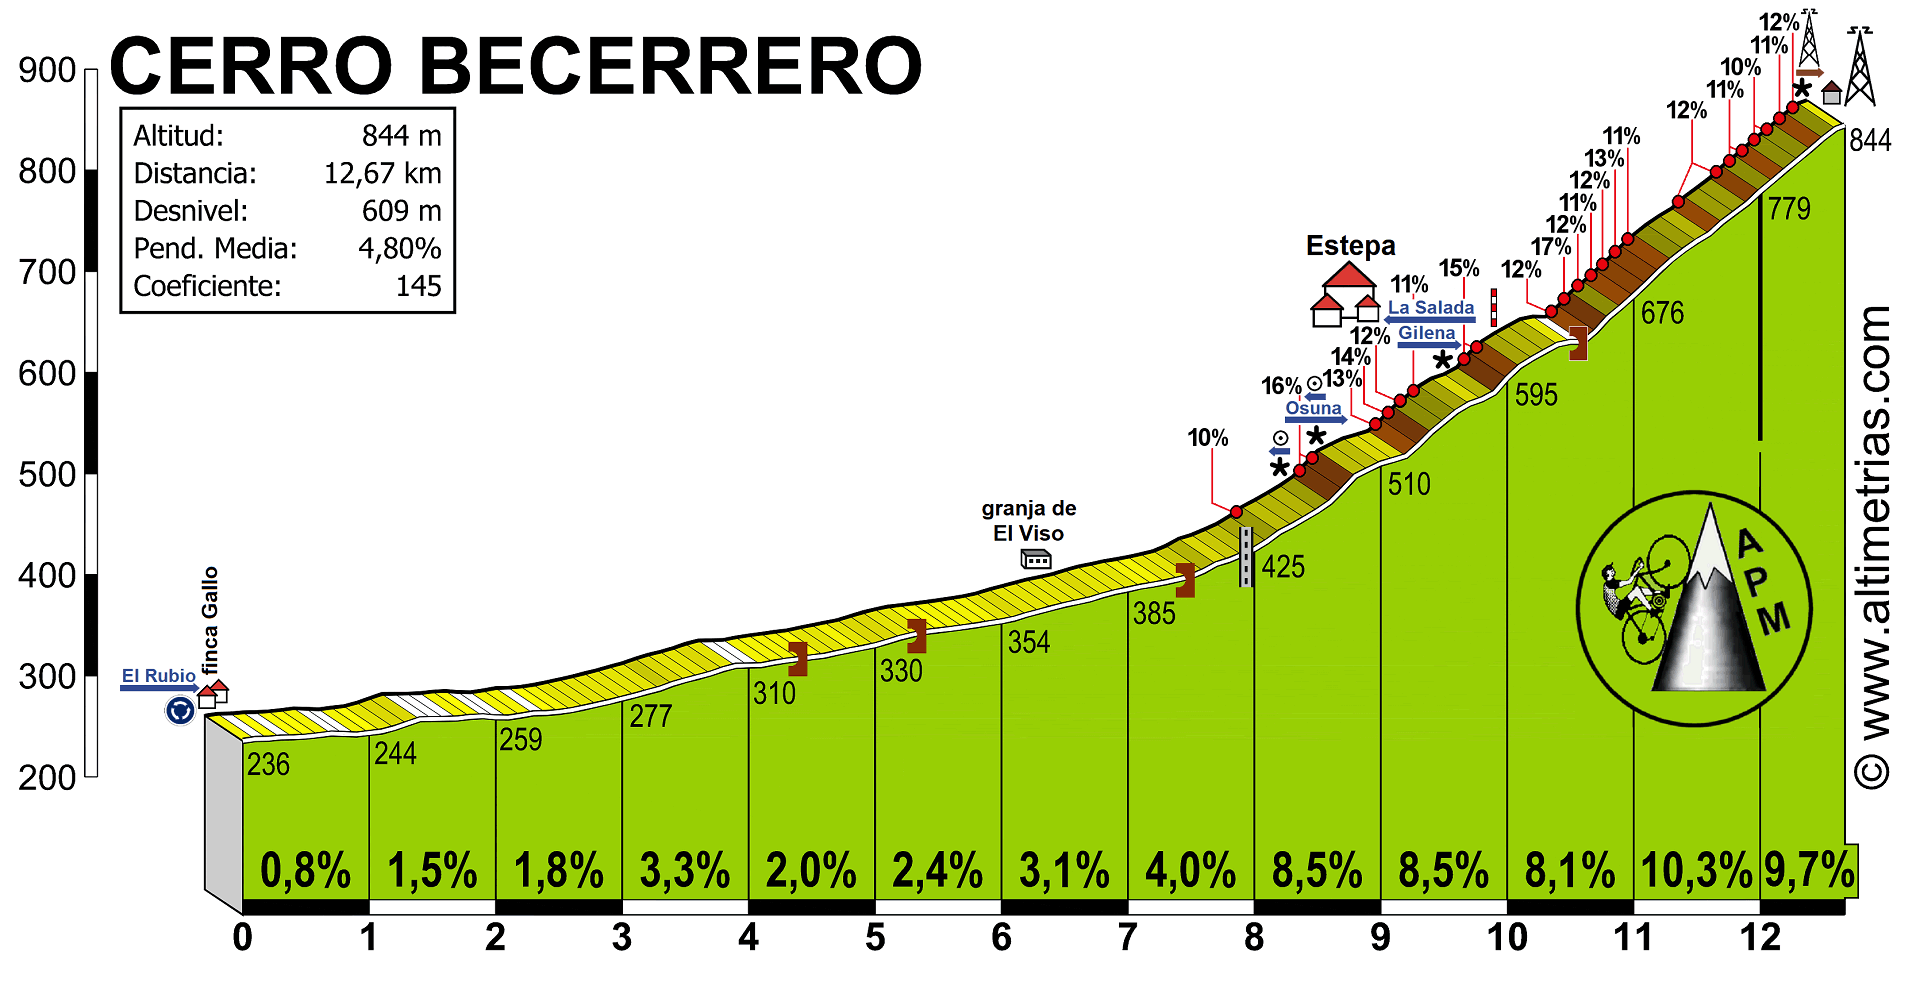 Cerro Becerrero